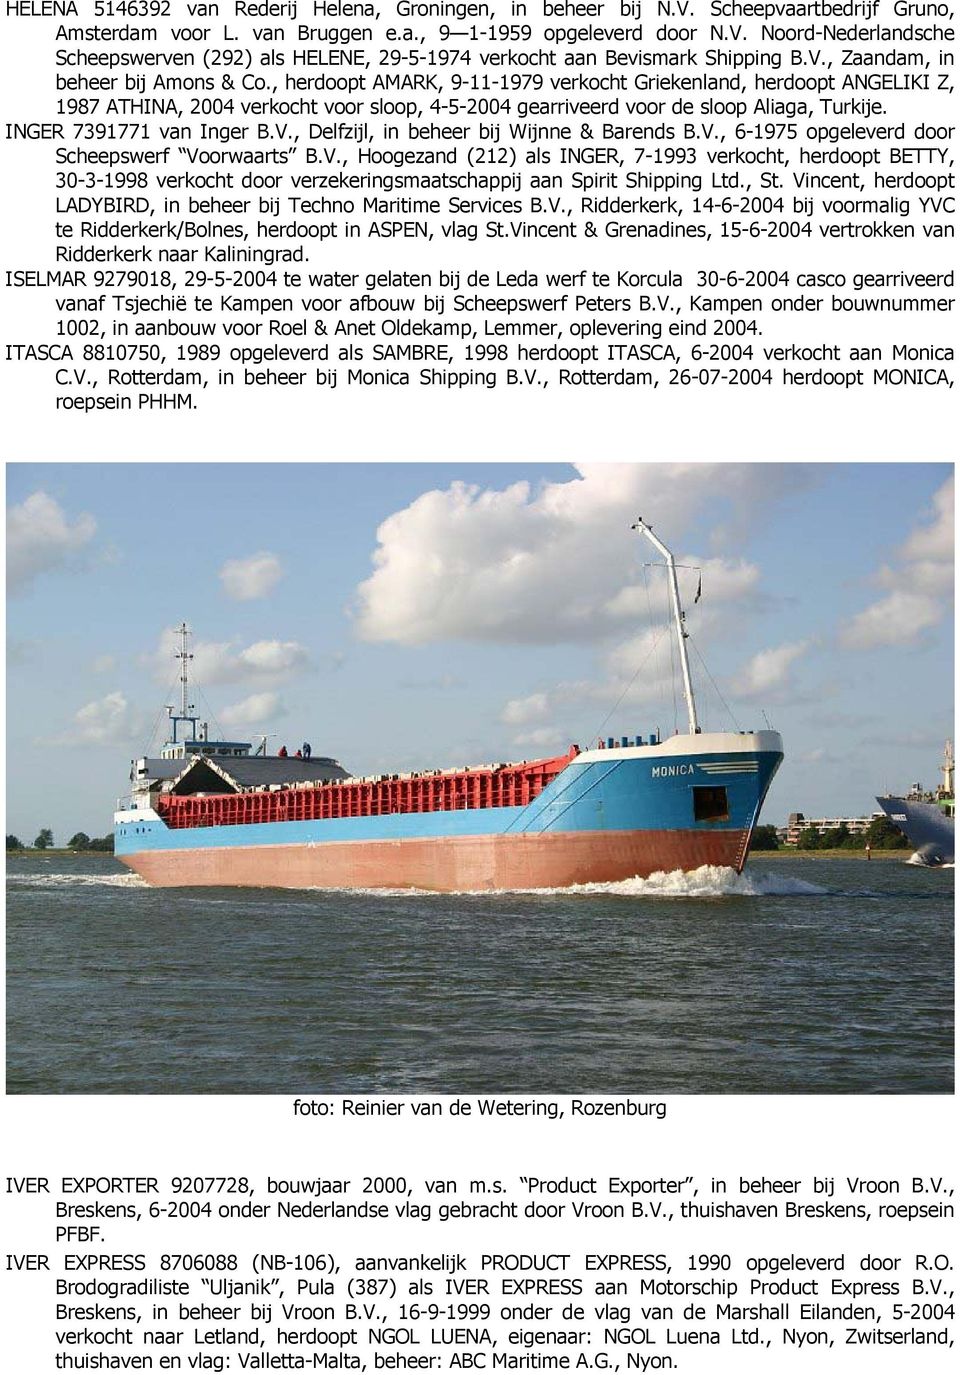 INGER 7391771 van Inger B.V., Delfzijl, in beheer bij Wijnne & Barends B.V., 6-1975 opgeleverd door Scheepswerf Voorwaarts B.V., Hoogezand (212) als INGER, 7-1993 verkocht, herdoopt BETTY, 30-3-1998 verkocht door verzekeringsmaatschappij aan Spirit Shipping Ltd.